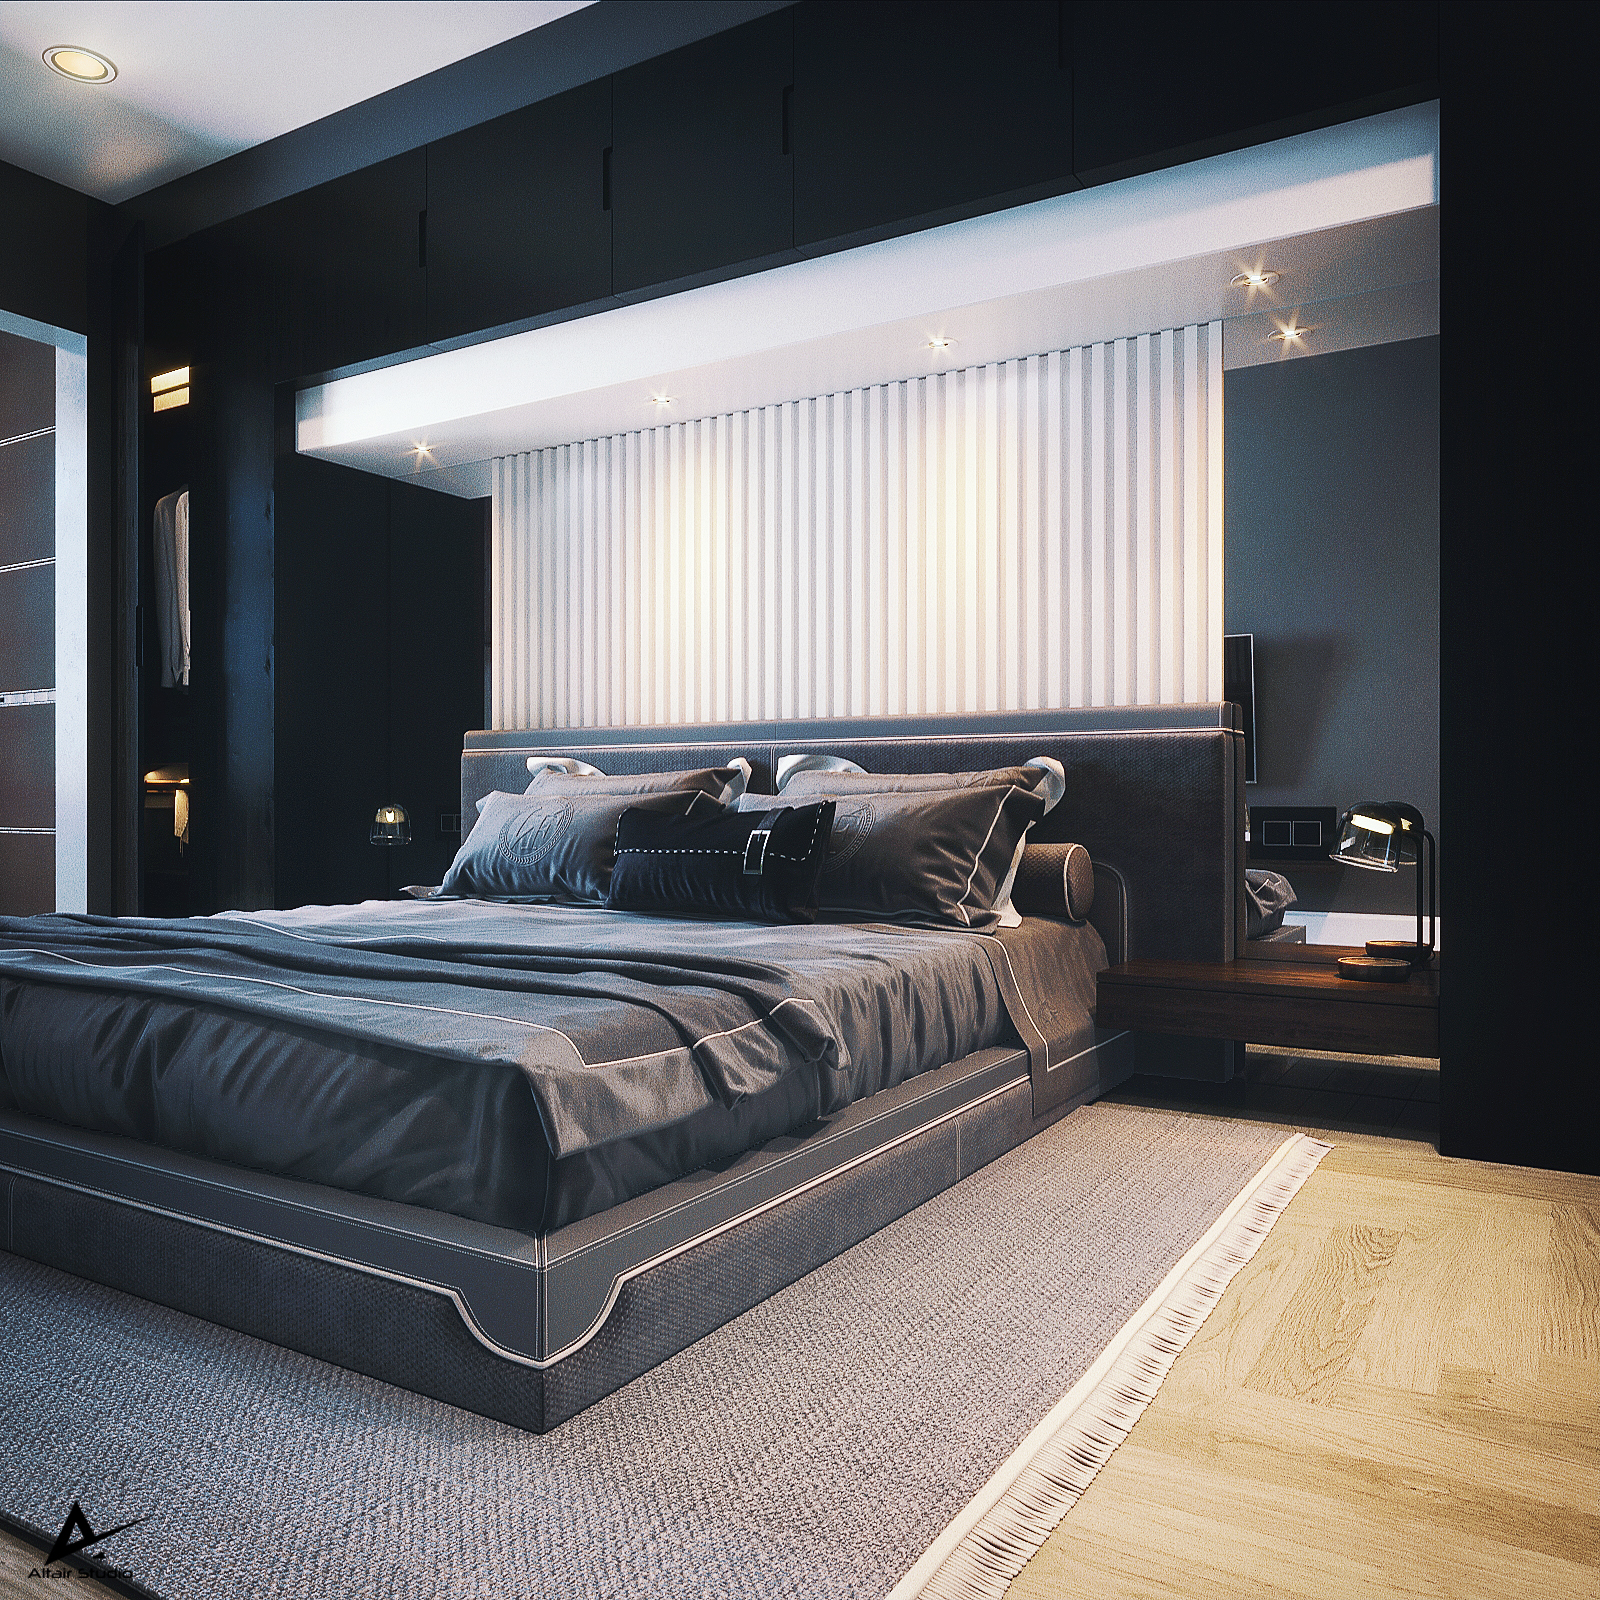 Modern Karanlık Yatak Odası in 3d max corona render resim